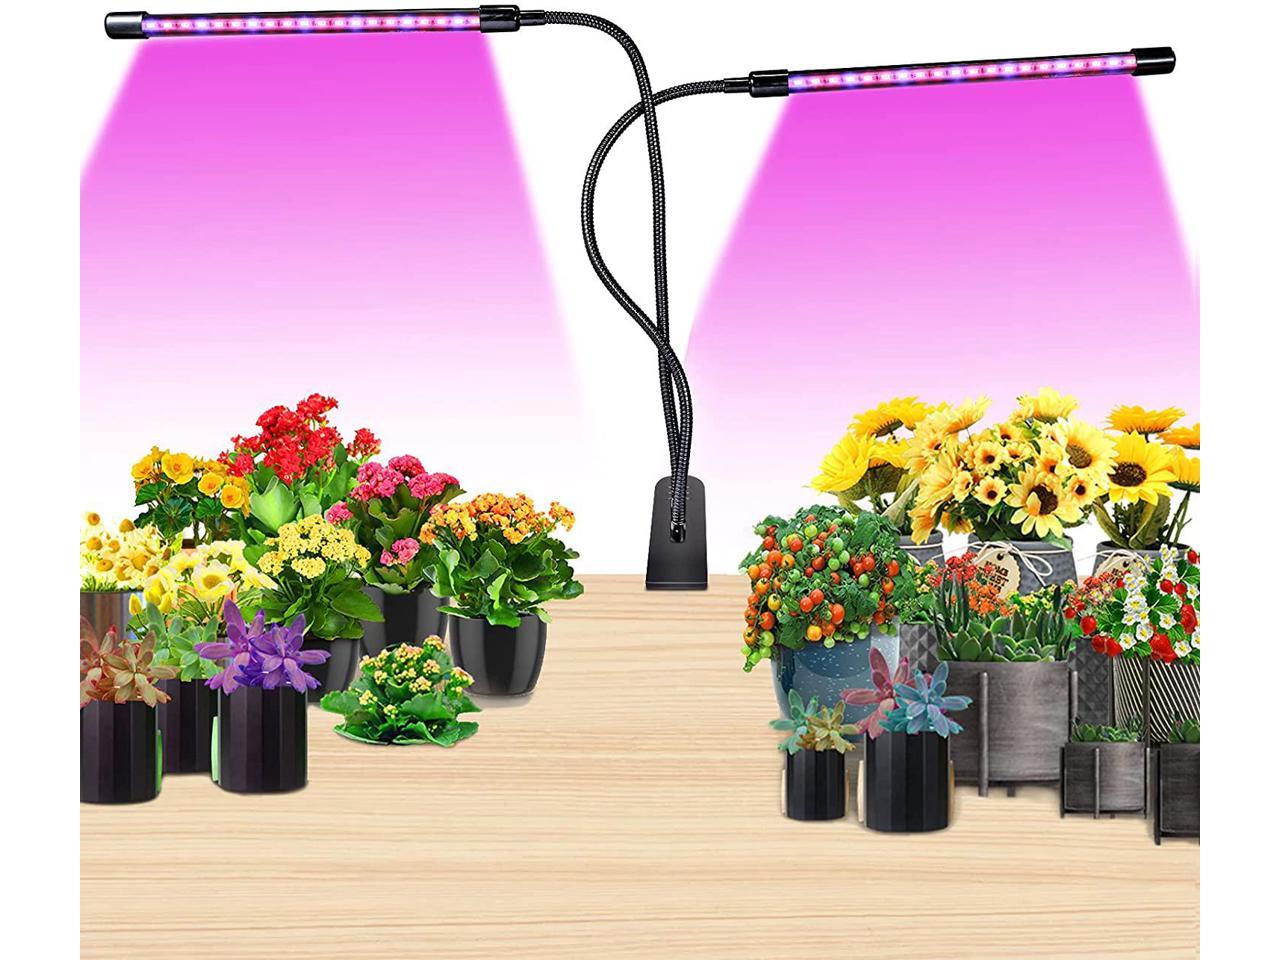 LED Grow Light Strip Waterproof Full Spectrum Lamp for Indoor Plant Veg Flowers 